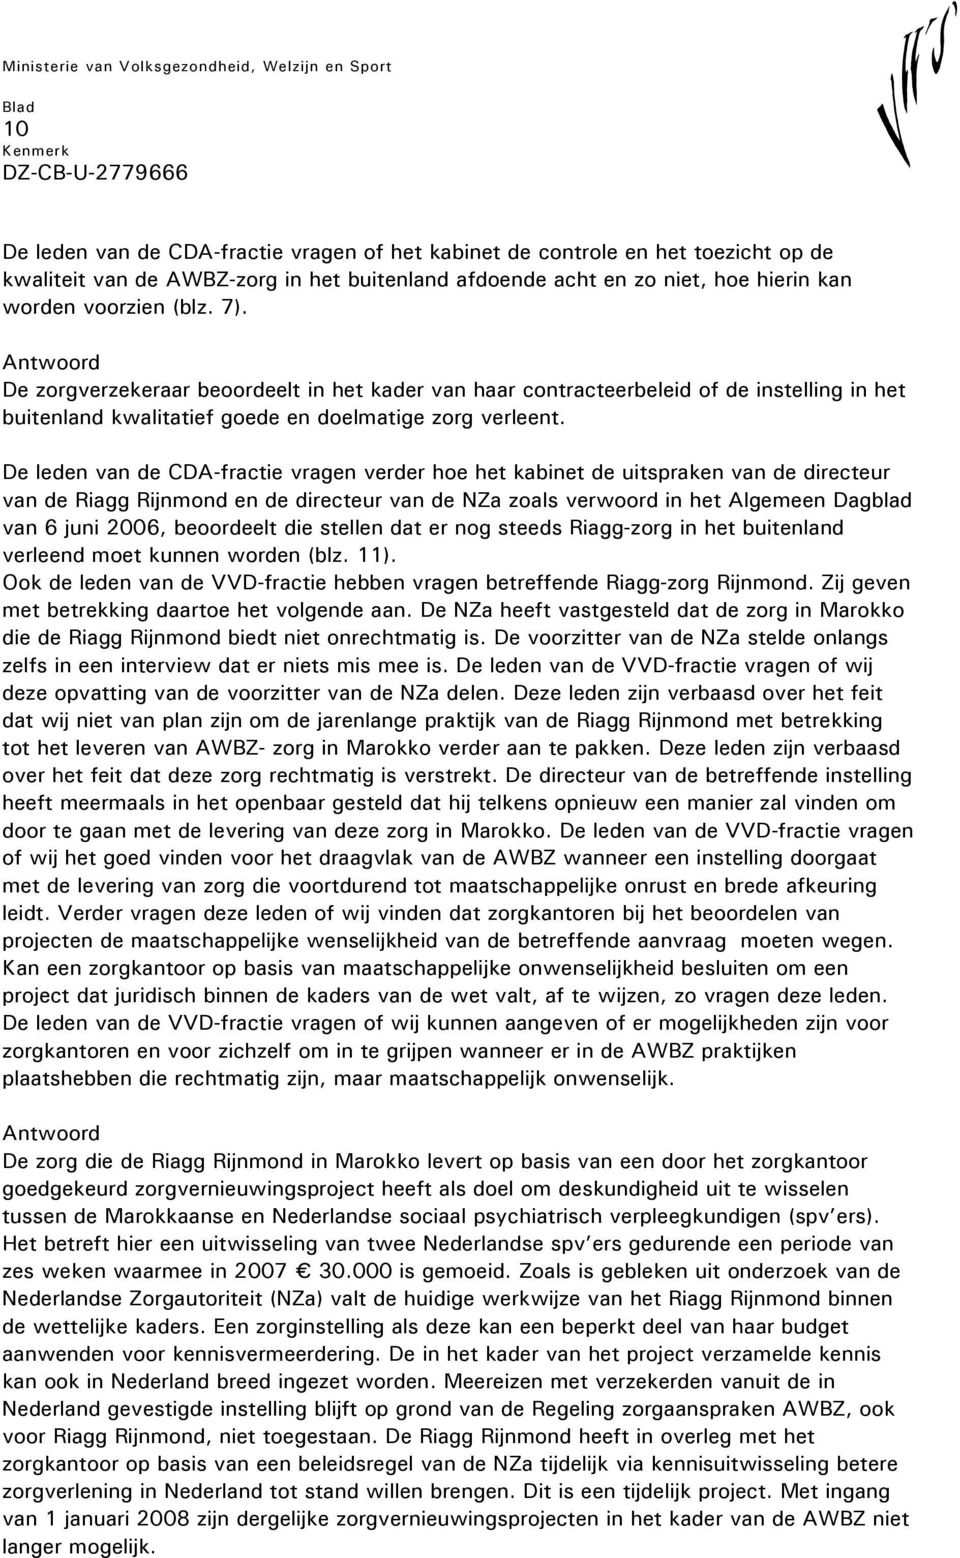 De leden van de CDA-fractie vragen verder hoe het kabinet de uitspraken van de directeur van de Riagg Rijnmond en de directeur van de NZa zoals verwoord in het Algemeen Dagblad van 6 juni 2006,